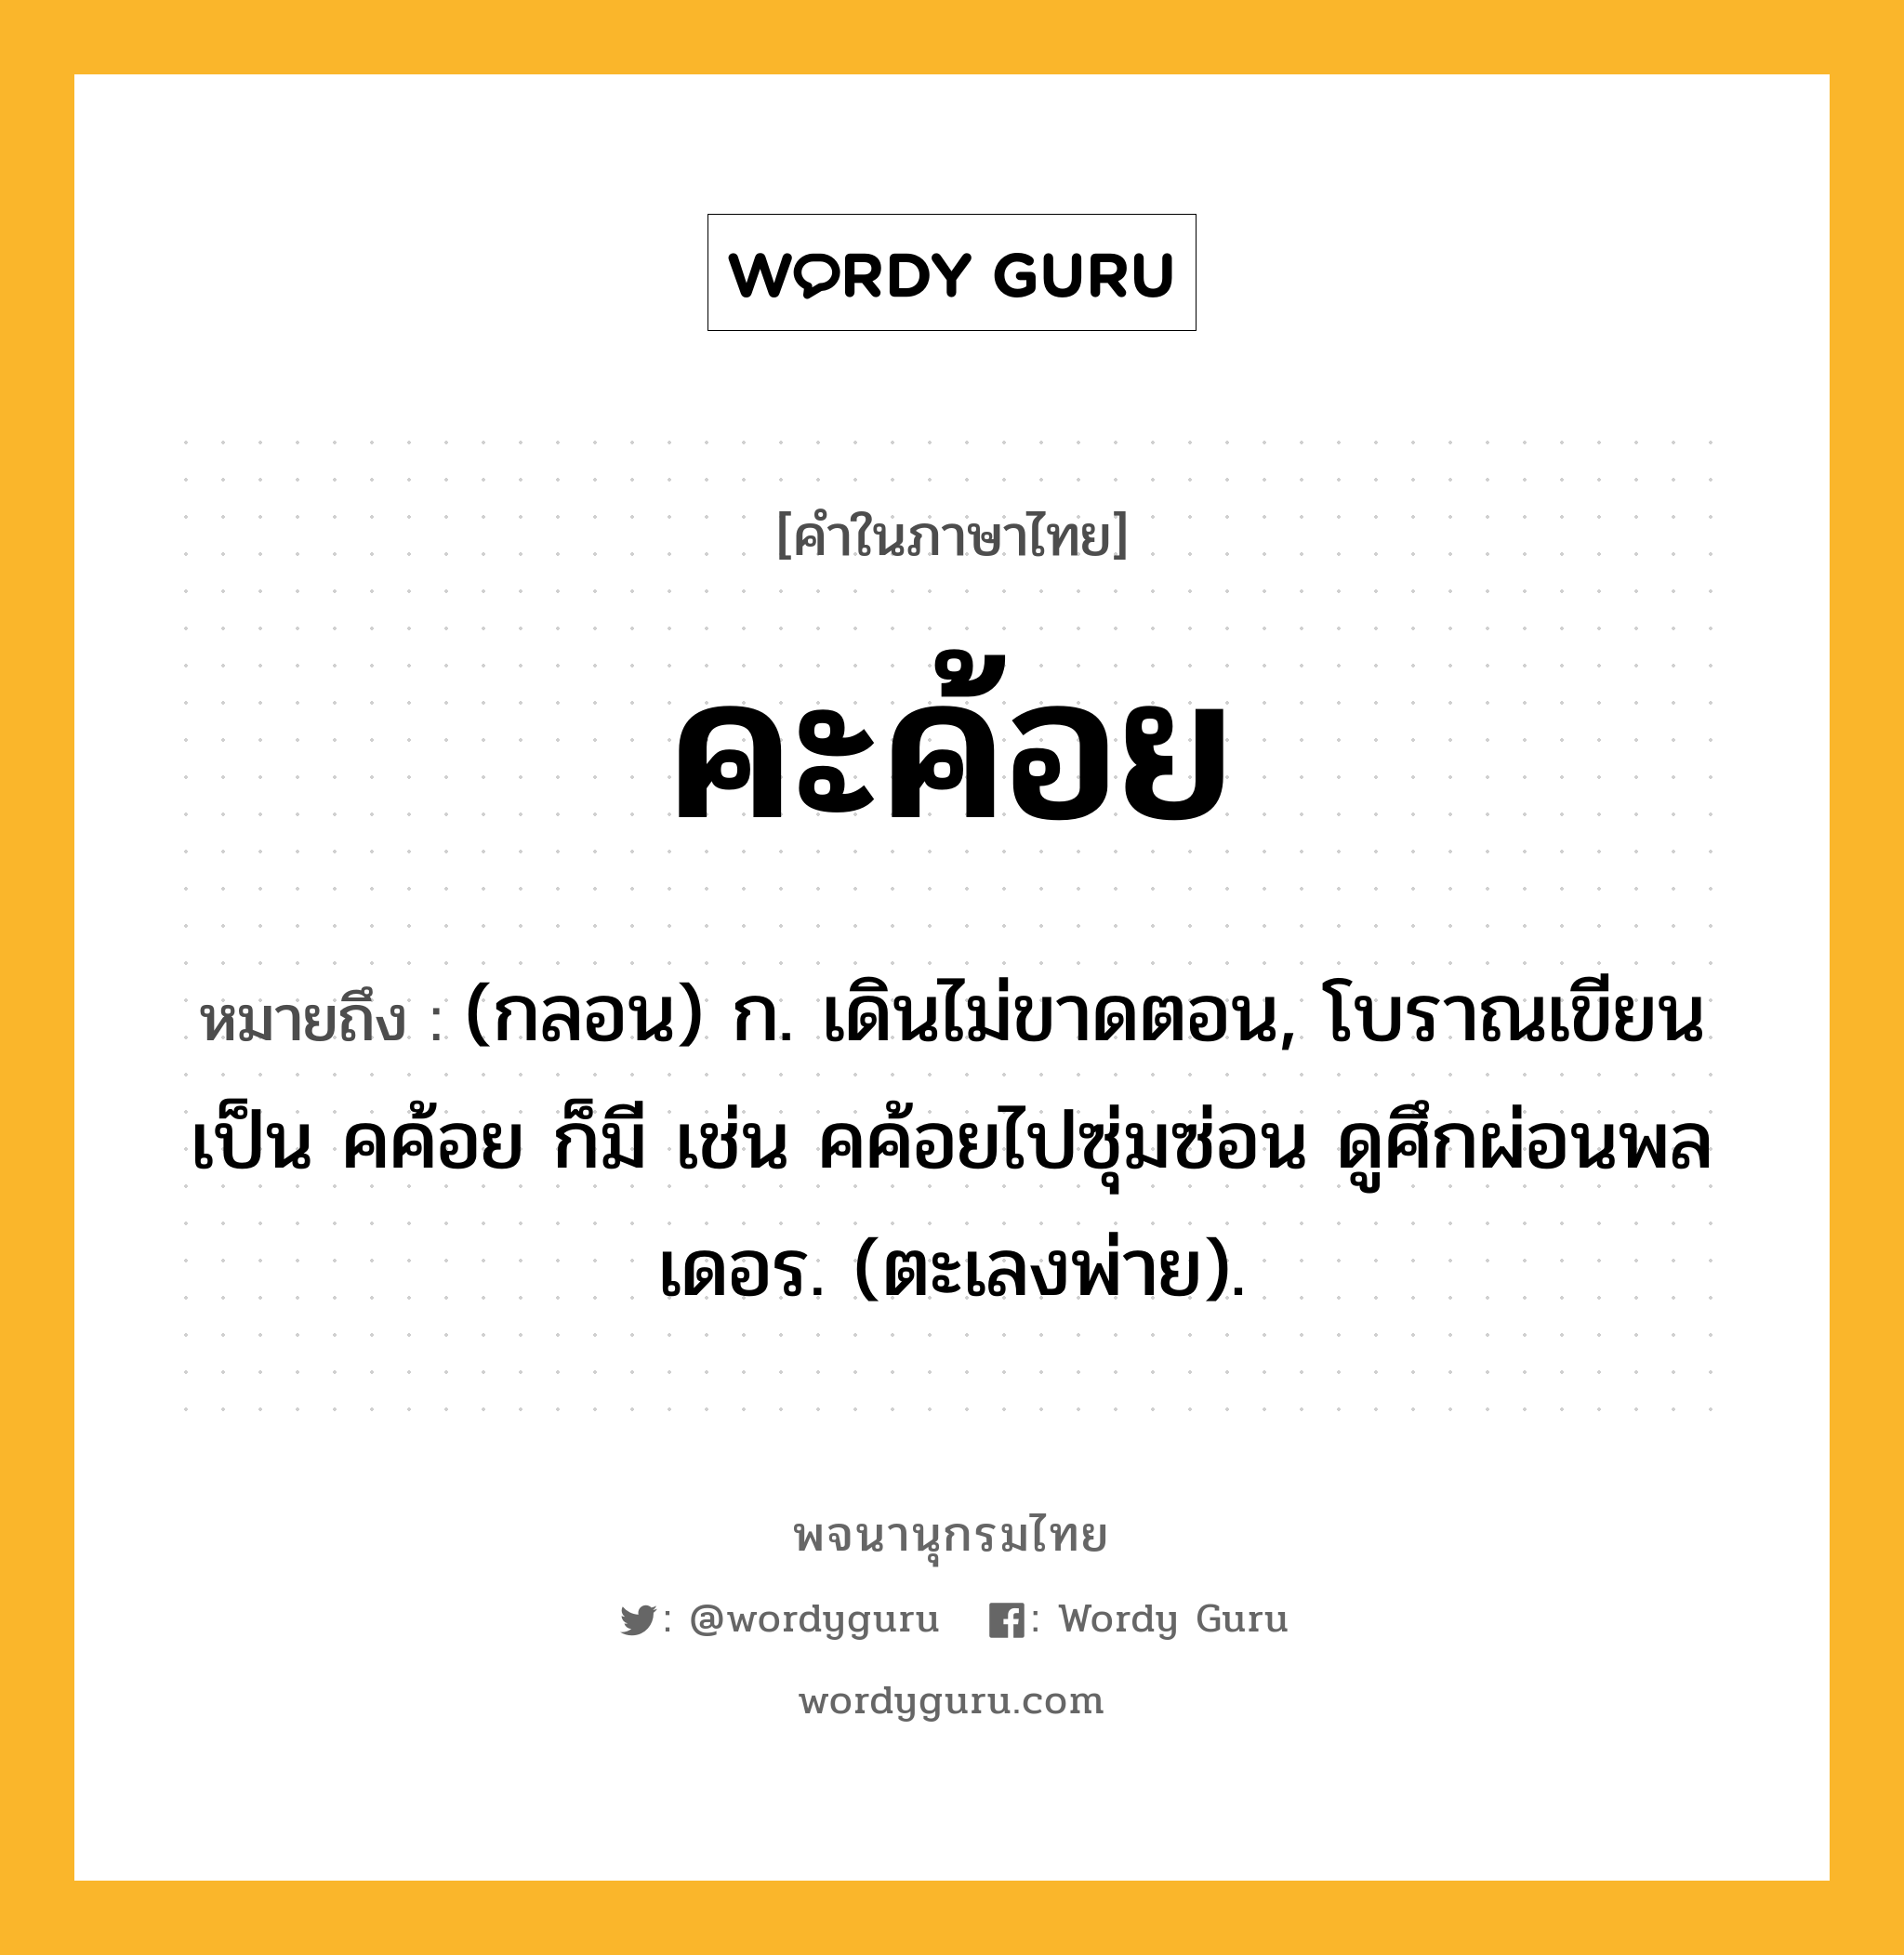 คะค้อย ความหมาย หมายถึงอะไร?, คำในภาษาไทย คะค้อย หมายถึง (กลอน) ก. เดินไม่ขาดตอน, โบราณเขียนเป็น คค้อย ก็มี เช่น คค้อยไปซุ่มซ่อน ดูศึกผ่อนพลเดอร. (ตะเลงพ่าย).